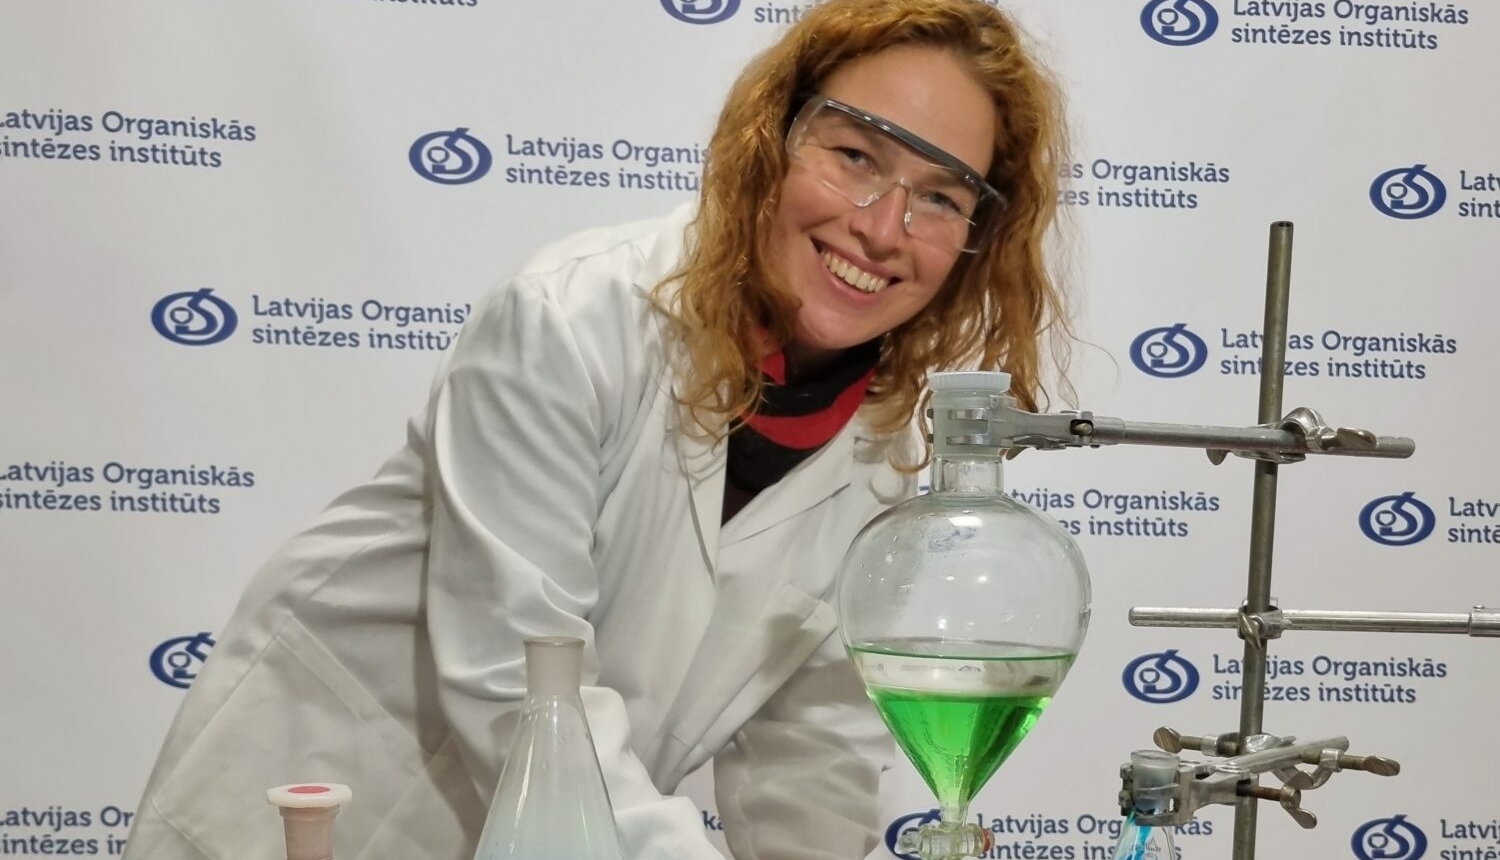 Baiba Švalbe: Jaunā zinātniece ar mērķi veicināt mūsdienu dzīves kvalitāti